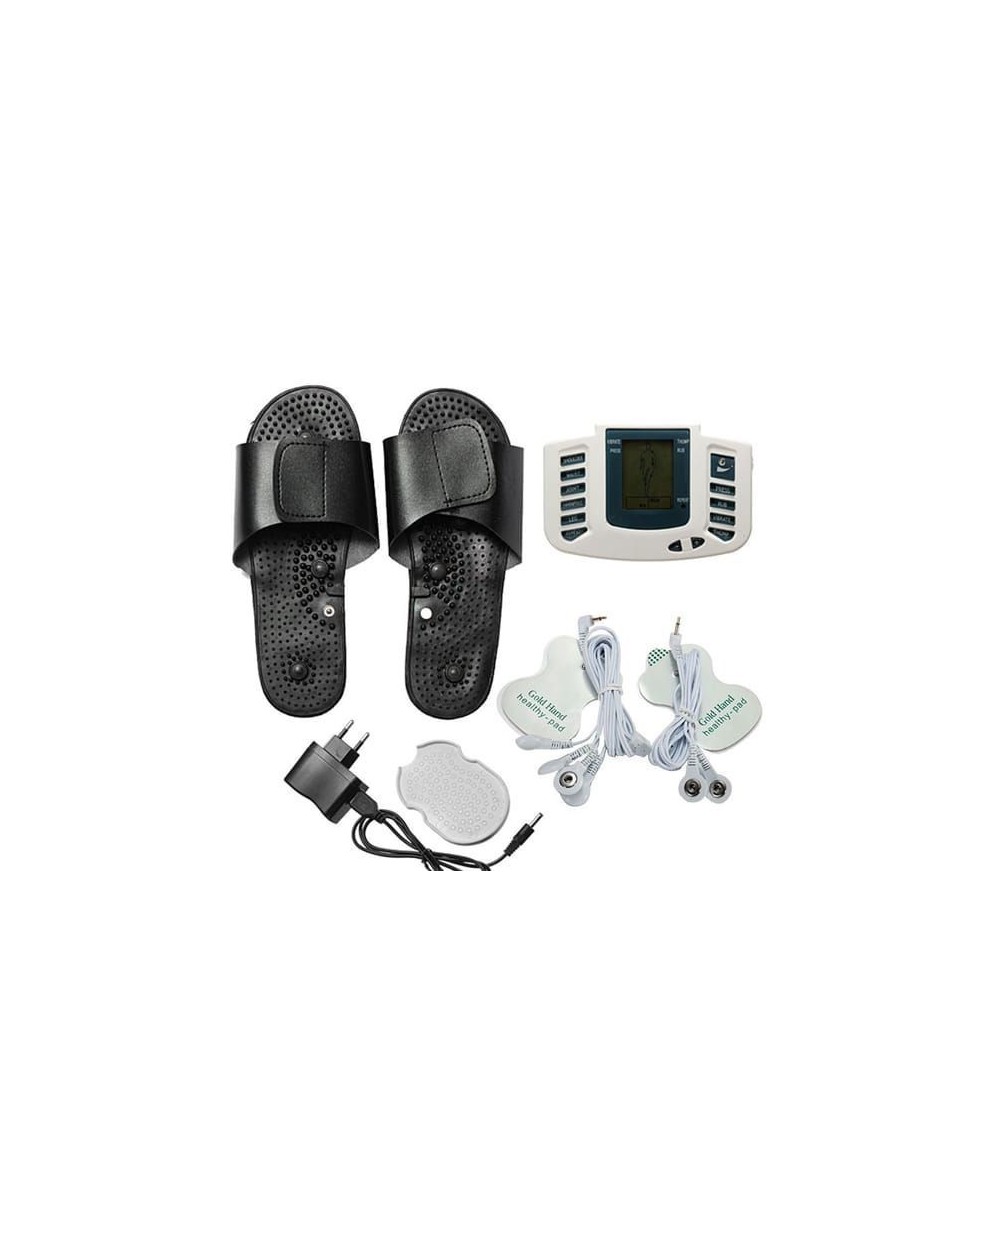 Συσκευή Μασάζ & Μυϊκής Τόνωσης - Ηλεκτροθεραπεία Με Παντόφλες JR309